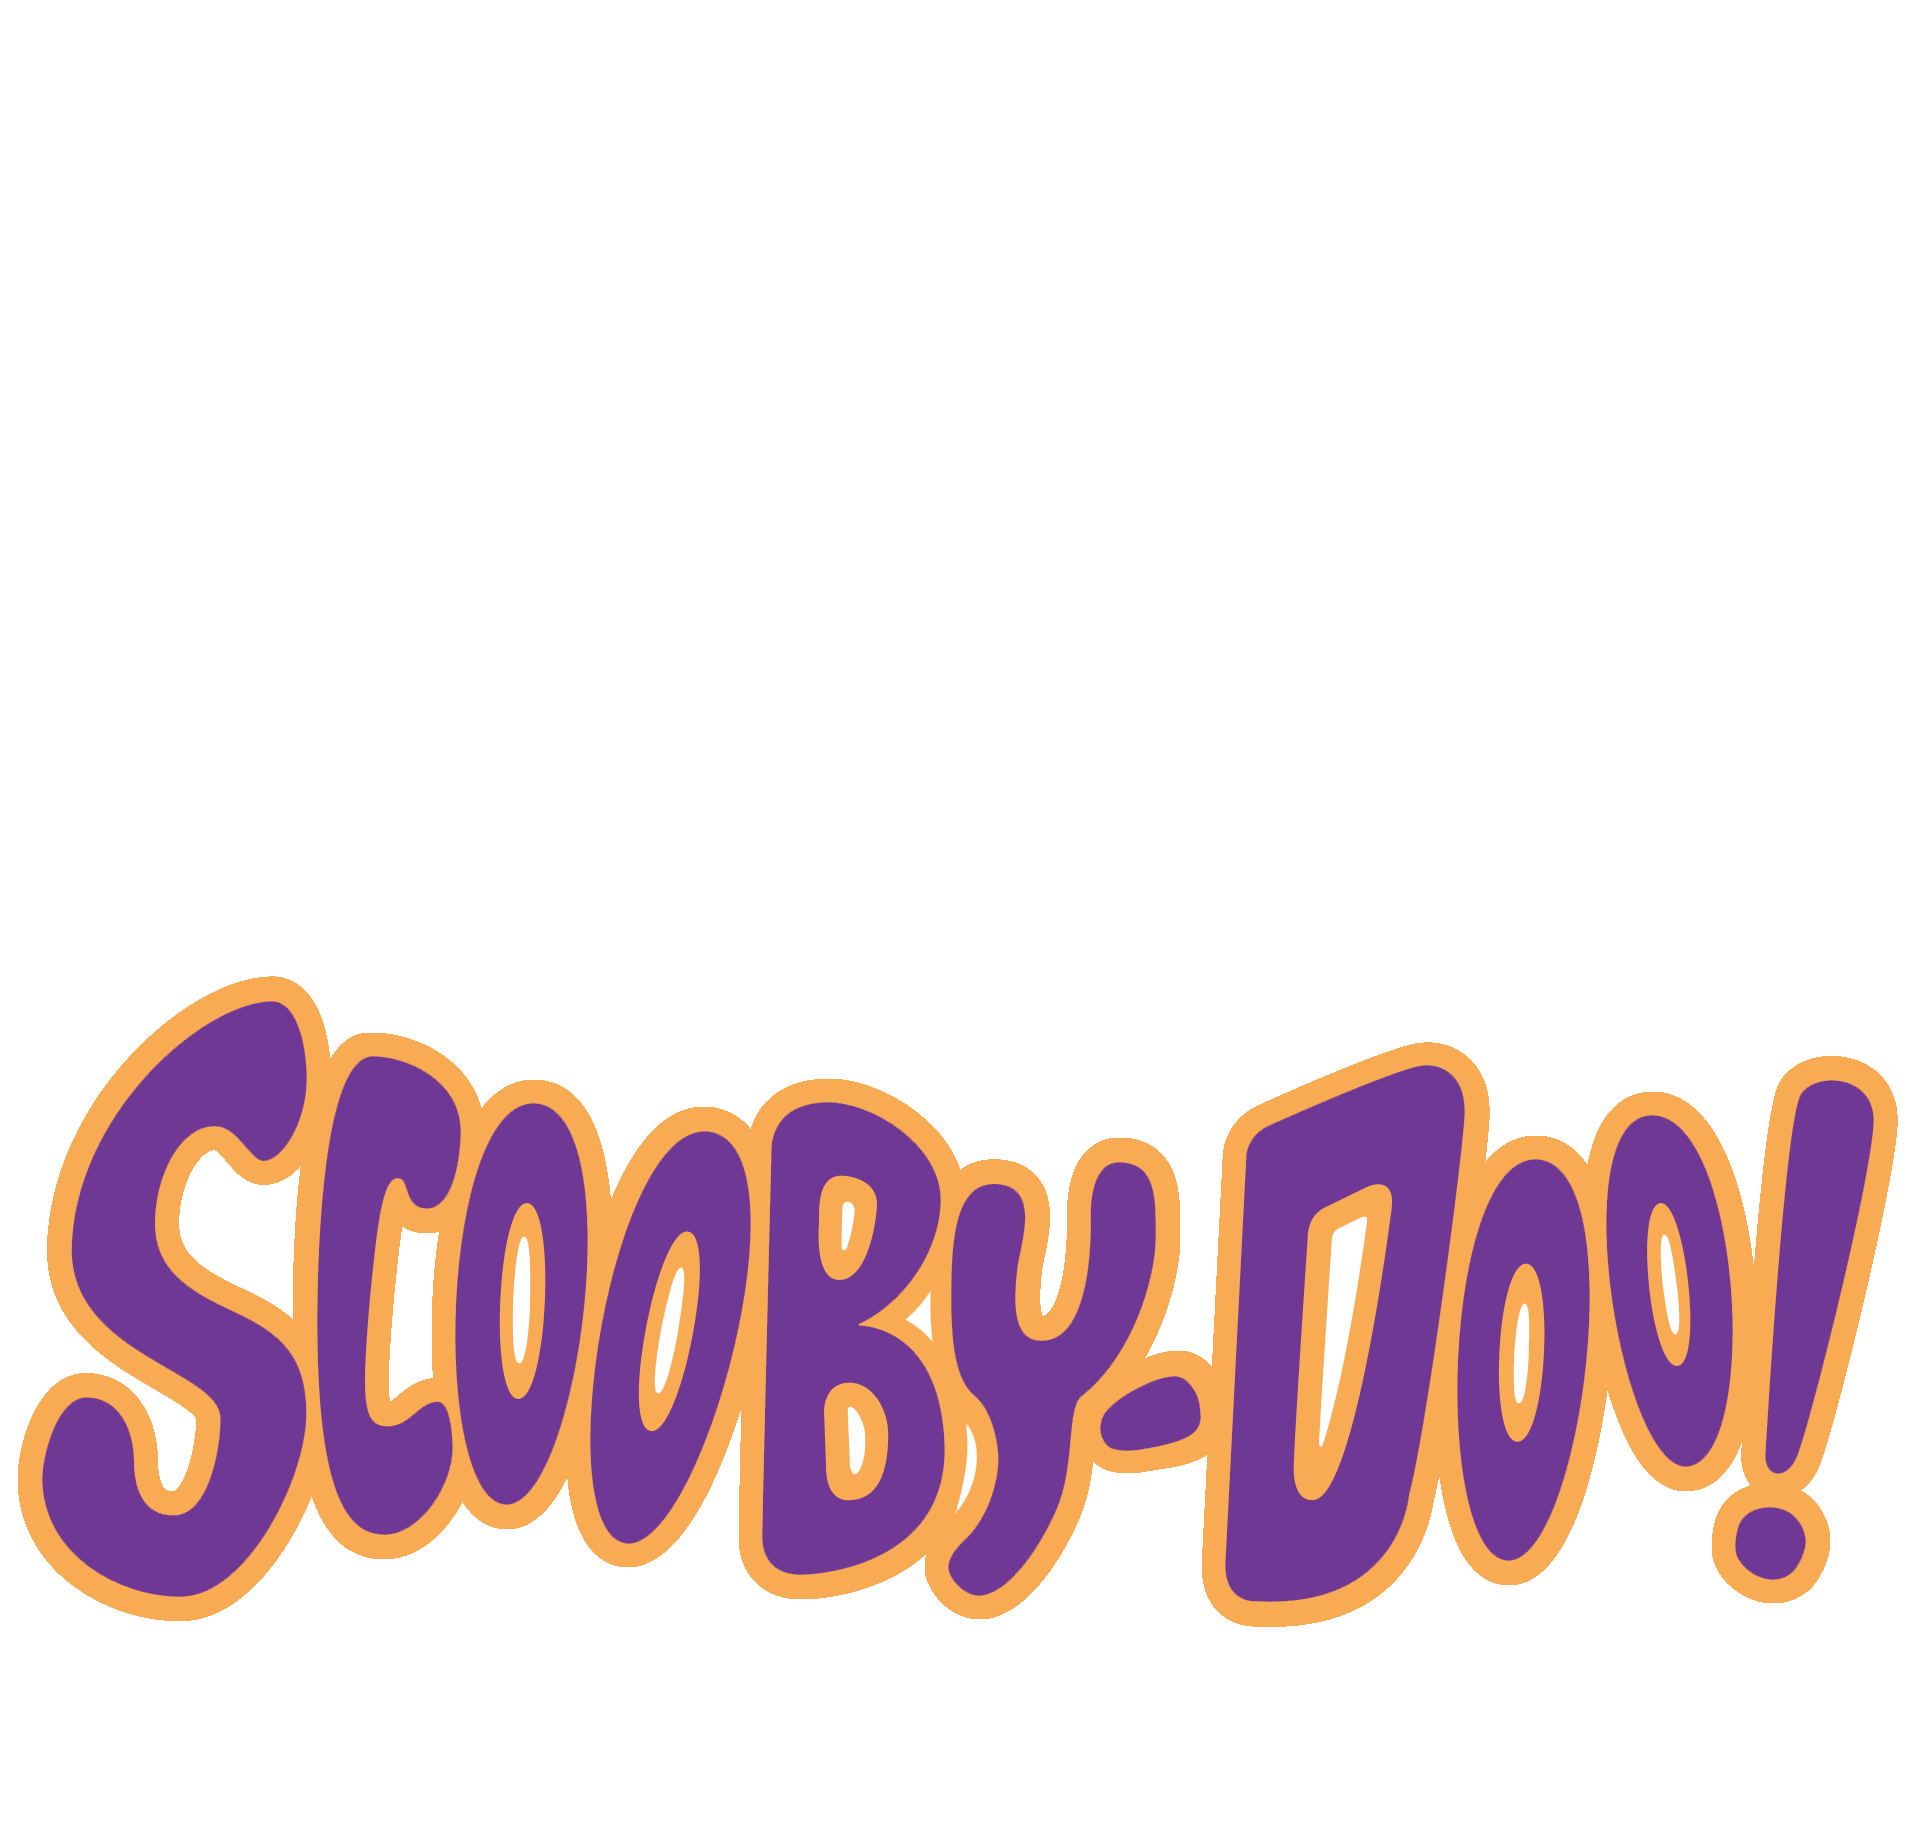 Scooby Doo Games, Videos & Downloads Online! - Cartoon Network